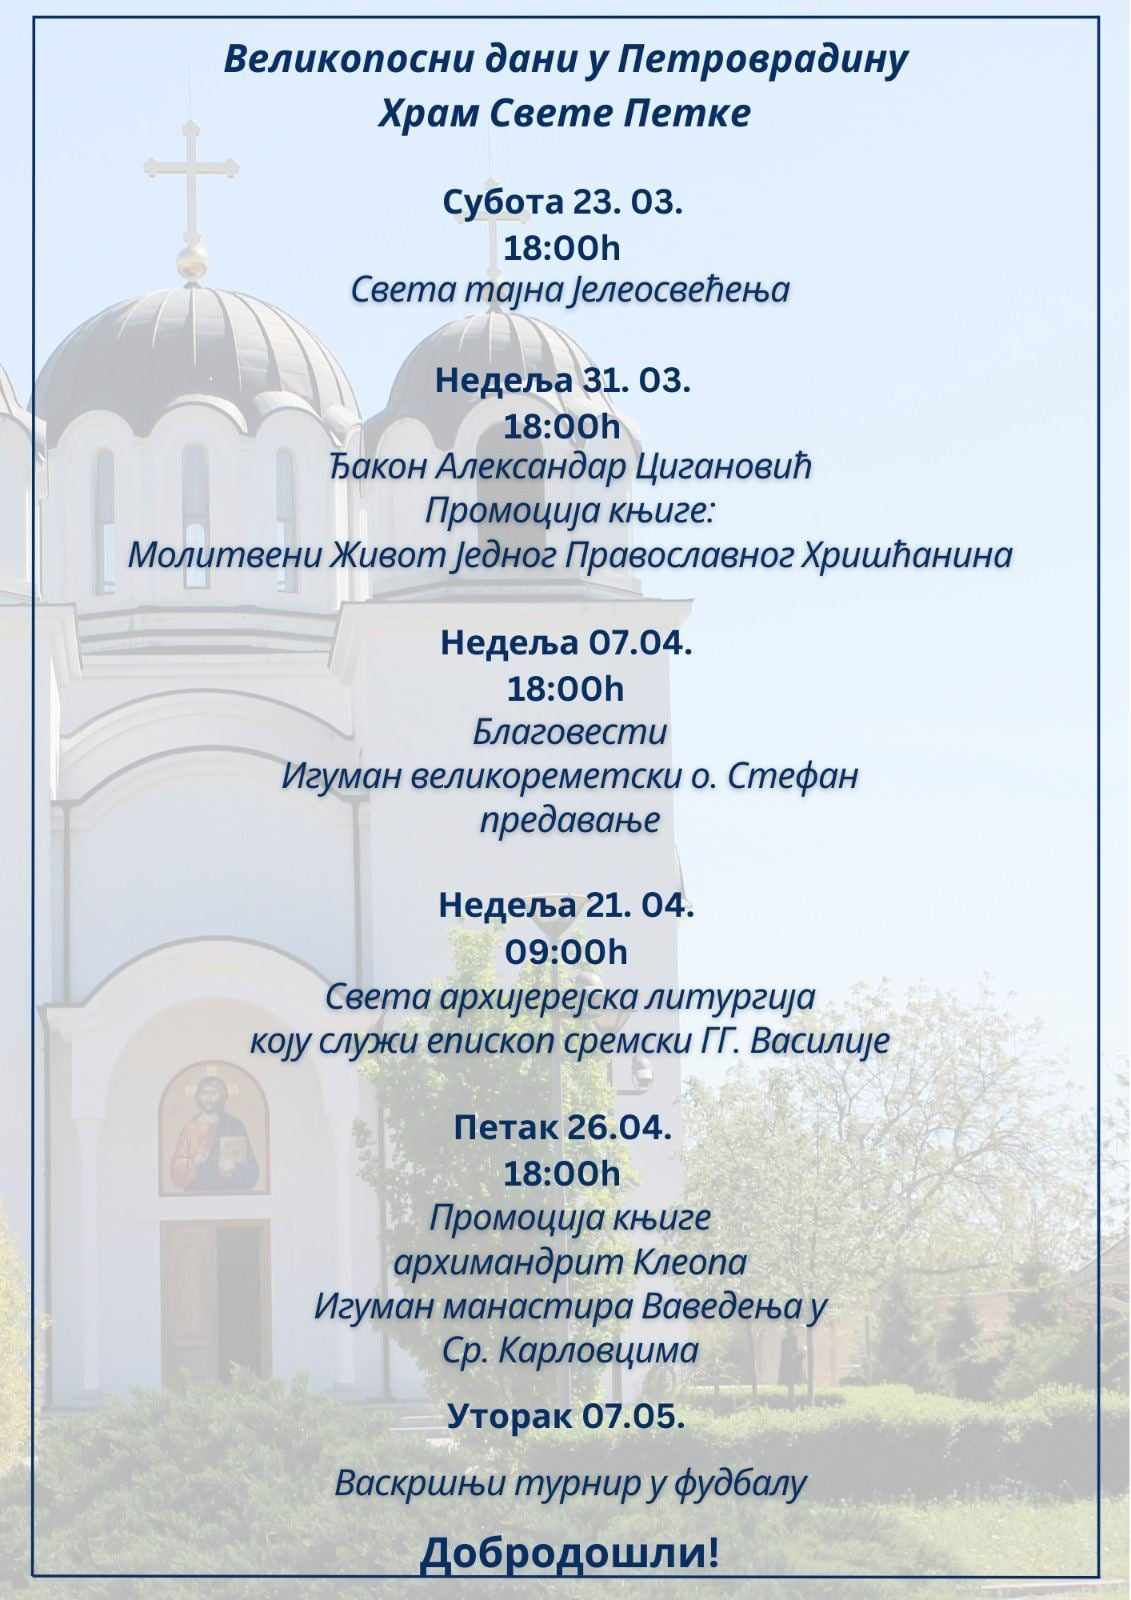 Најава: Великопосни дани у Храму Свете Петке у Петроварадину